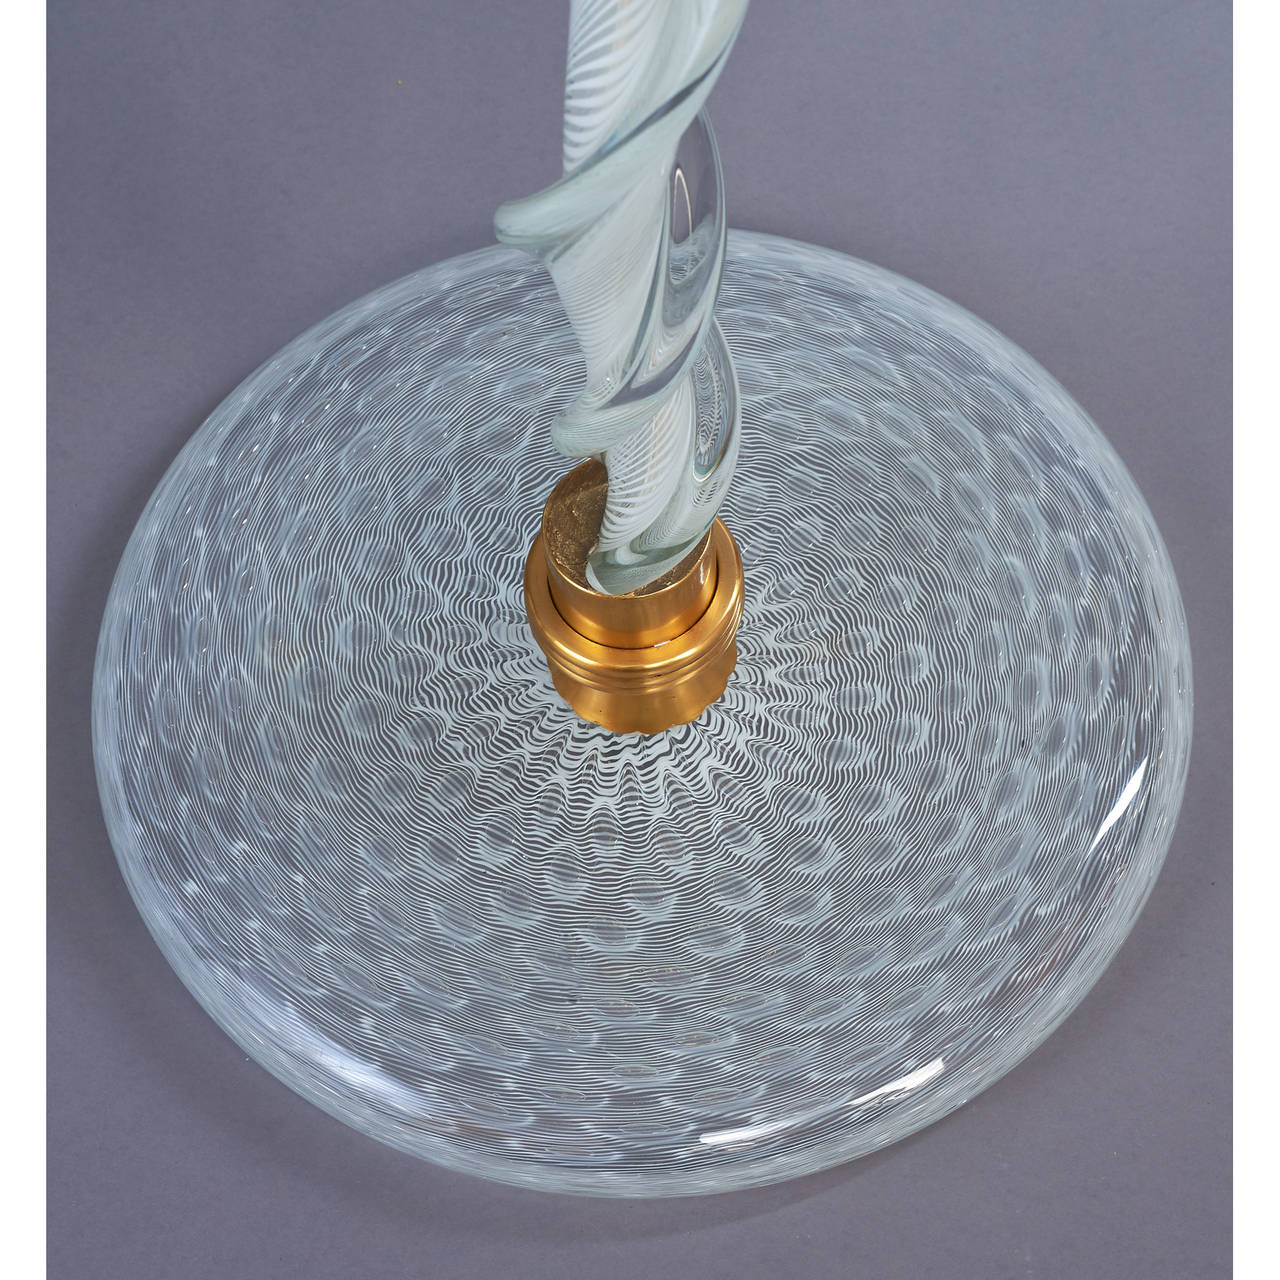 Venini, dem zugeschrieben wird,
Bedeutende Stehlampe aus Murano-Glas mit gedrehtem Schaft, weißer Filigranarbeit und mundgeblasenem Glas mit aufwendigem Spitzenmuster, Bronzebeschläge,
Italien, um 1950.
Abmessungen: 79 Höhe x 25